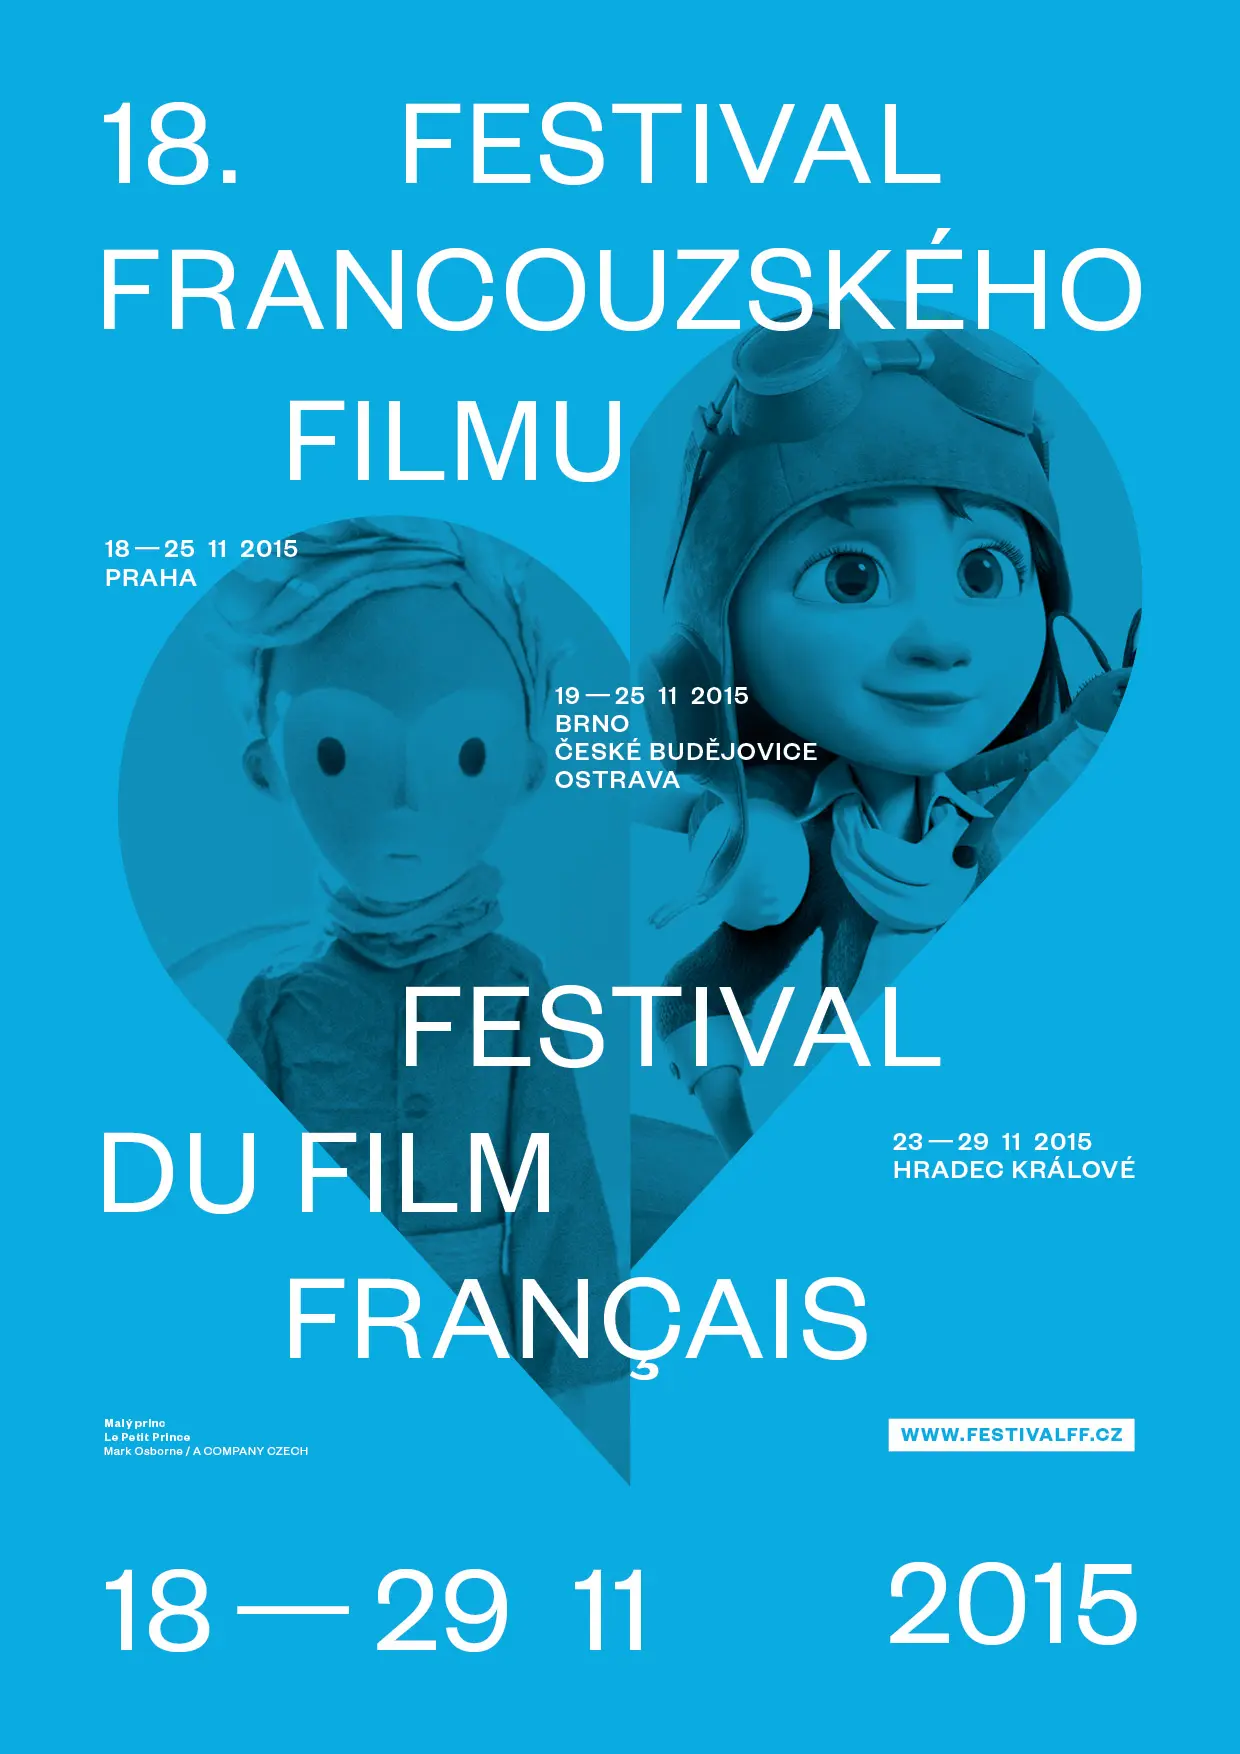 festival-francouzskeho-filmu-predstavi-predpremiery-ocekavanych-filmu-a-zajimave-hosty-soutez